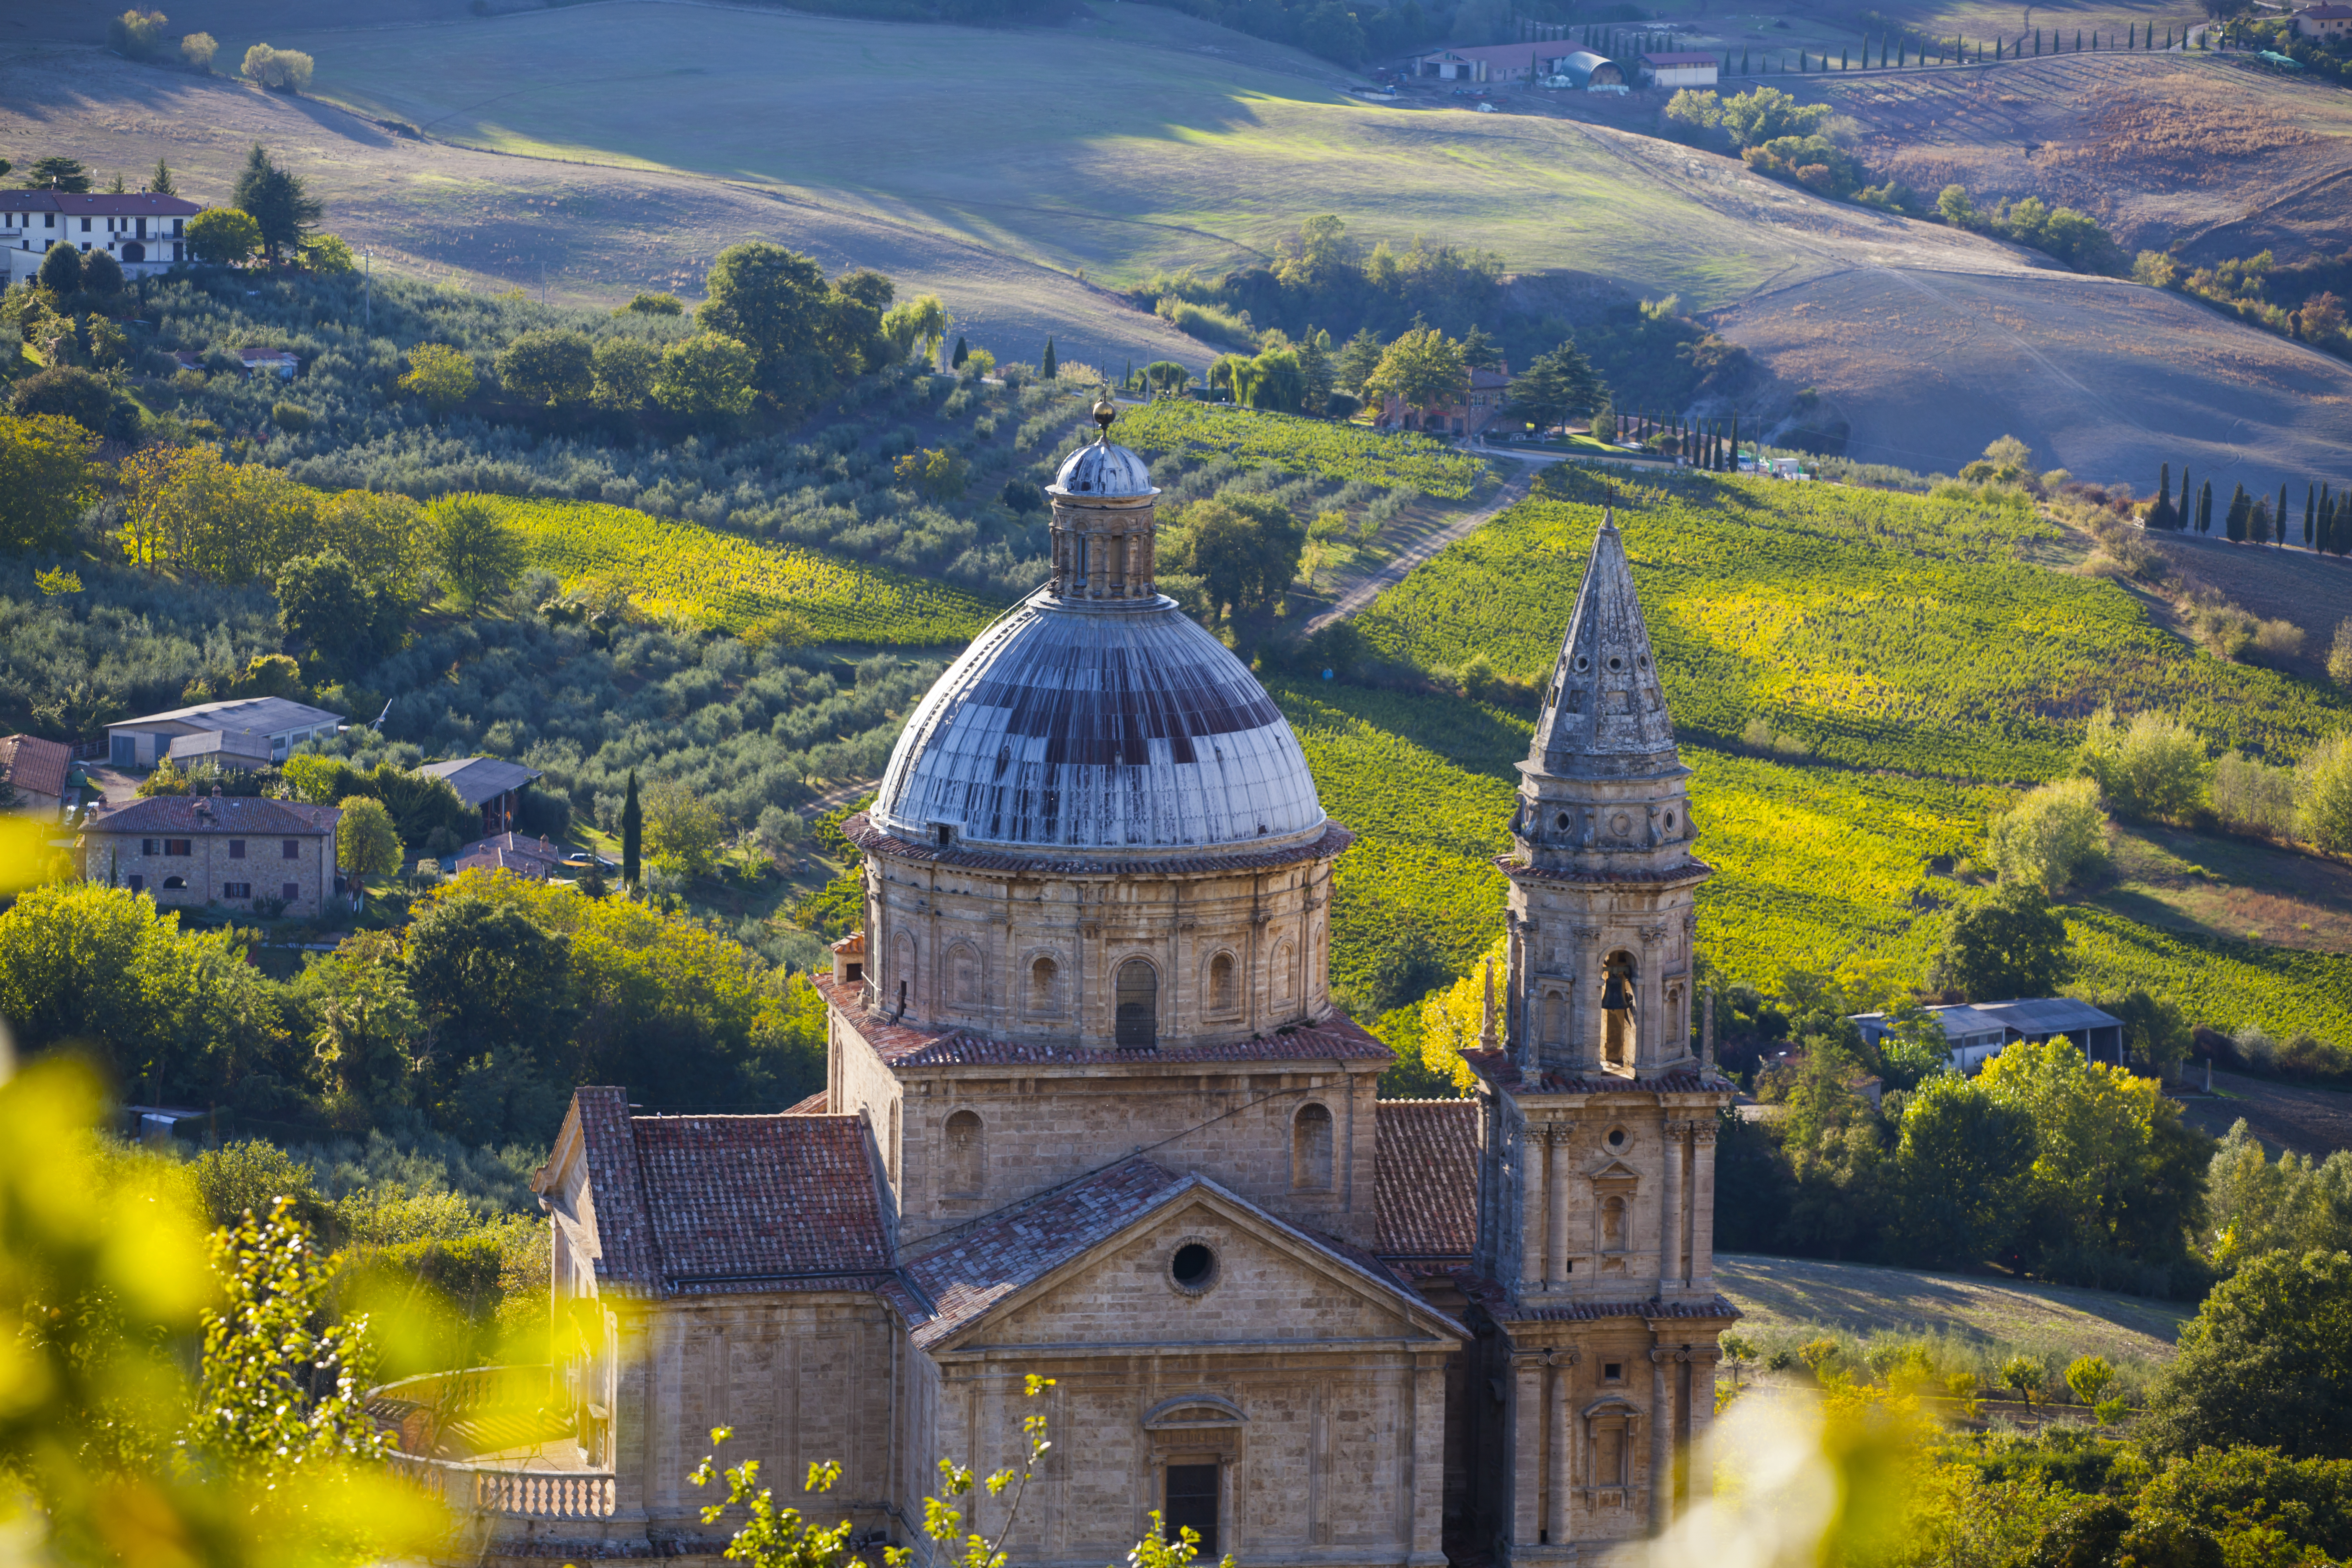 Turismo lento e di prossimità in Toscana: il caso del borgo di Montepulciano